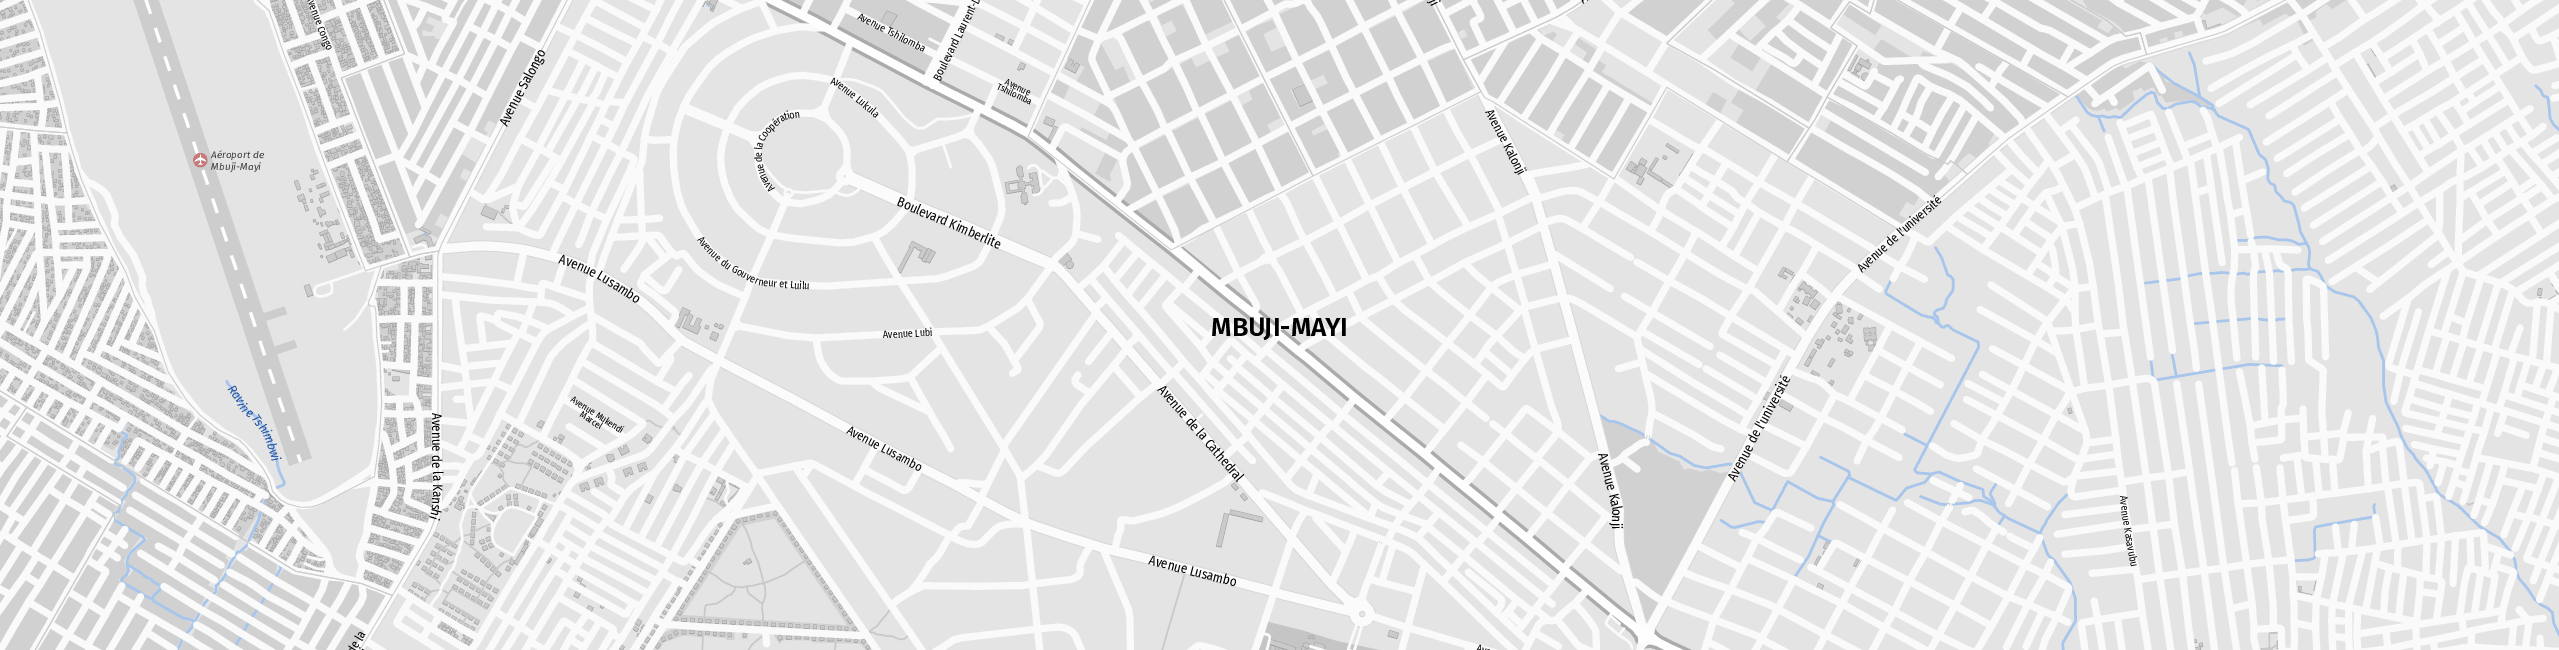 Stadtplan Mbuji-Mayi zum Downloaden.